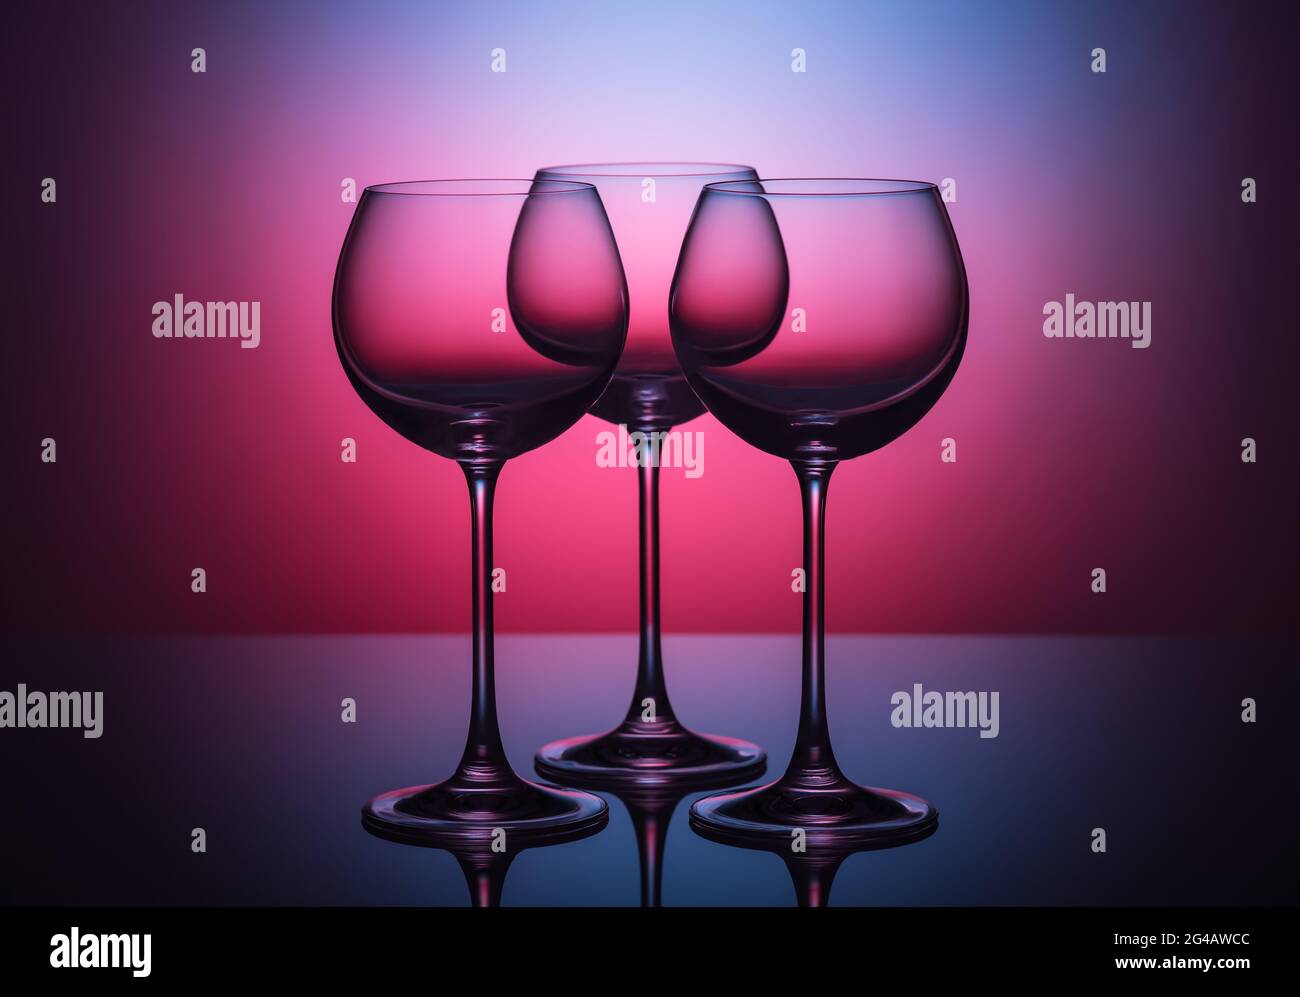 Drei leere Low Key Weinglaeser vor farbigem Hintergrund Stock Photo